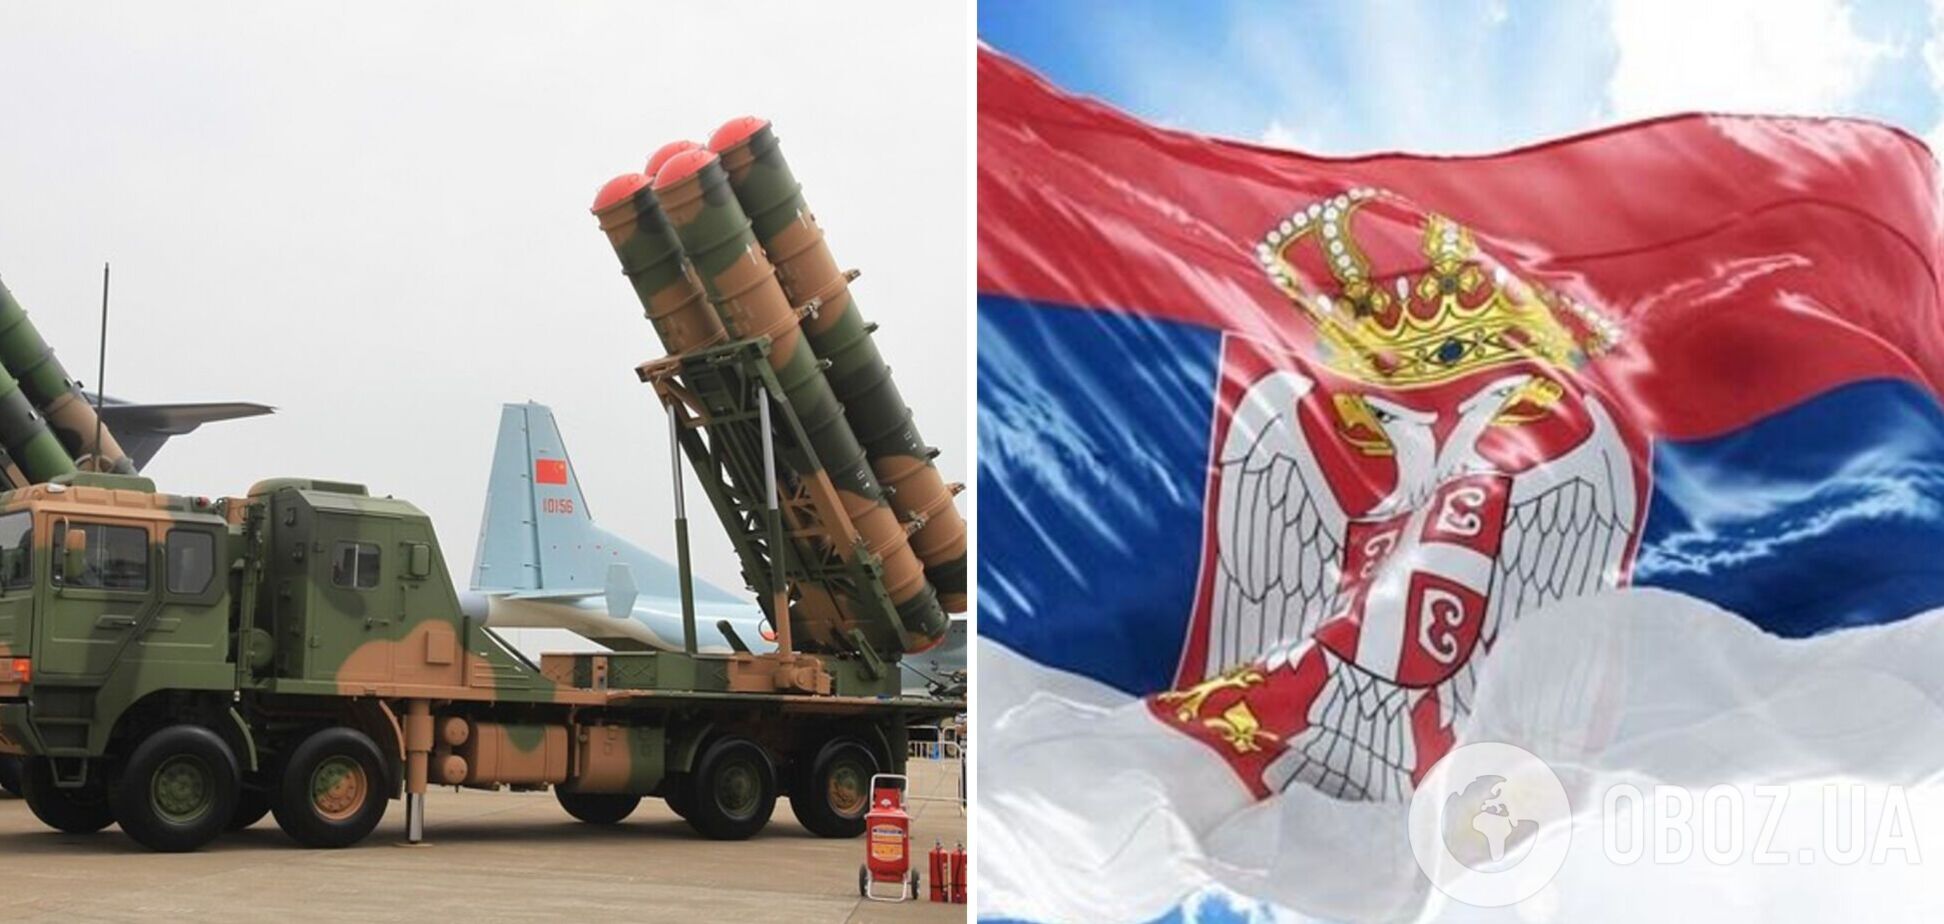 Сербия вооружилась китайскими зенитно-ракетными комплексами HQ-22 класса: что известно